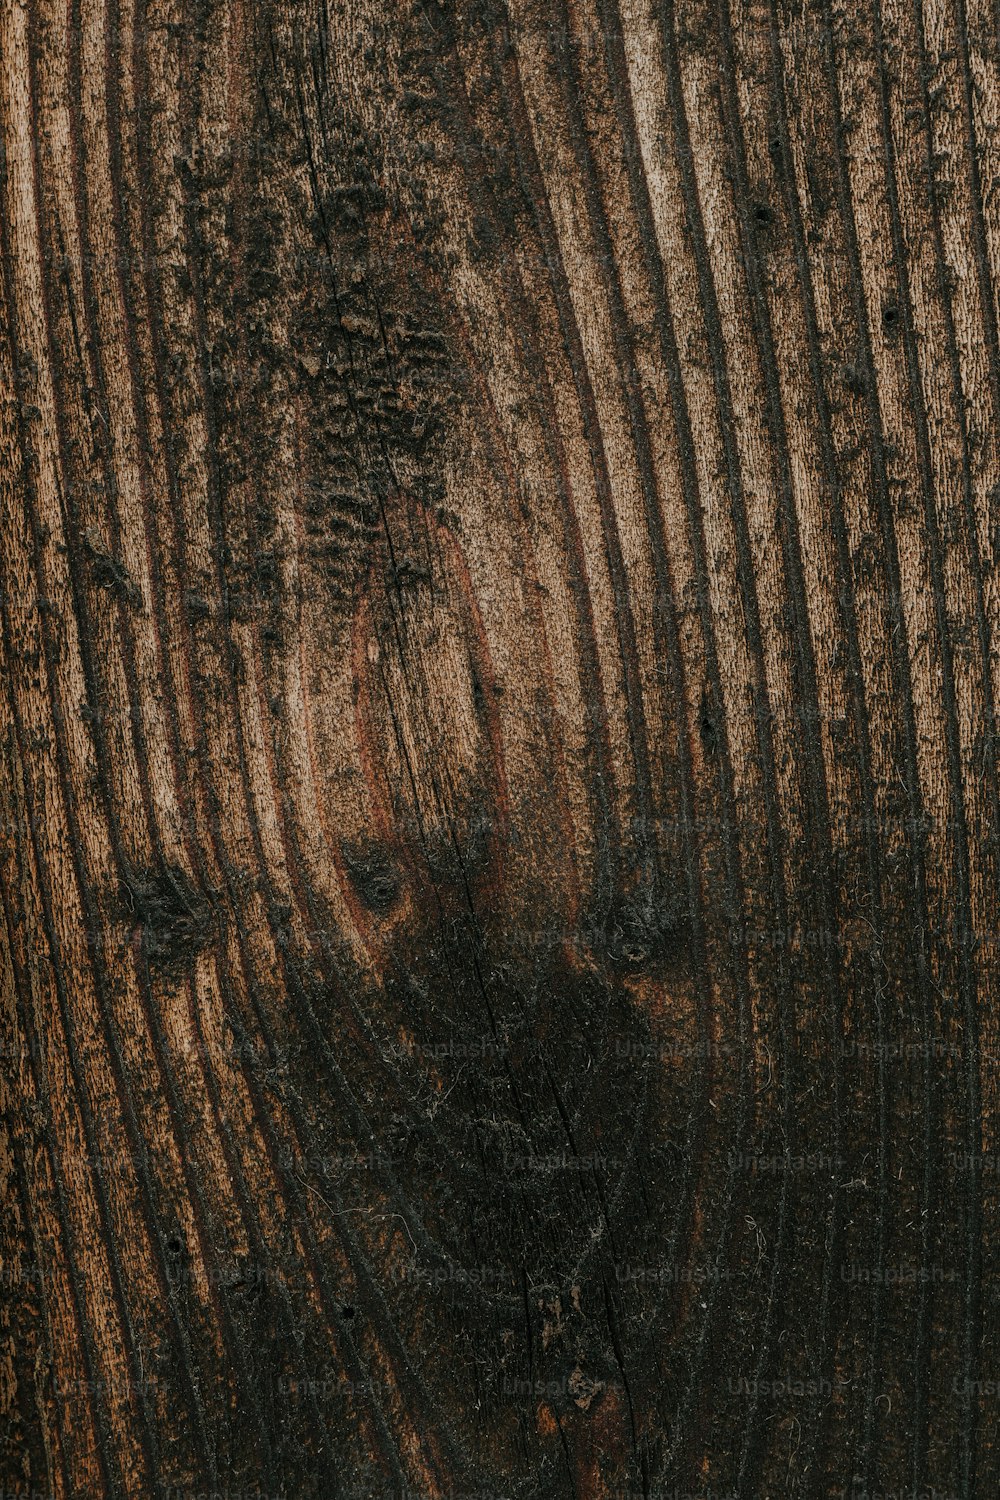 um close up de um tronco de árvore mostrando a casca